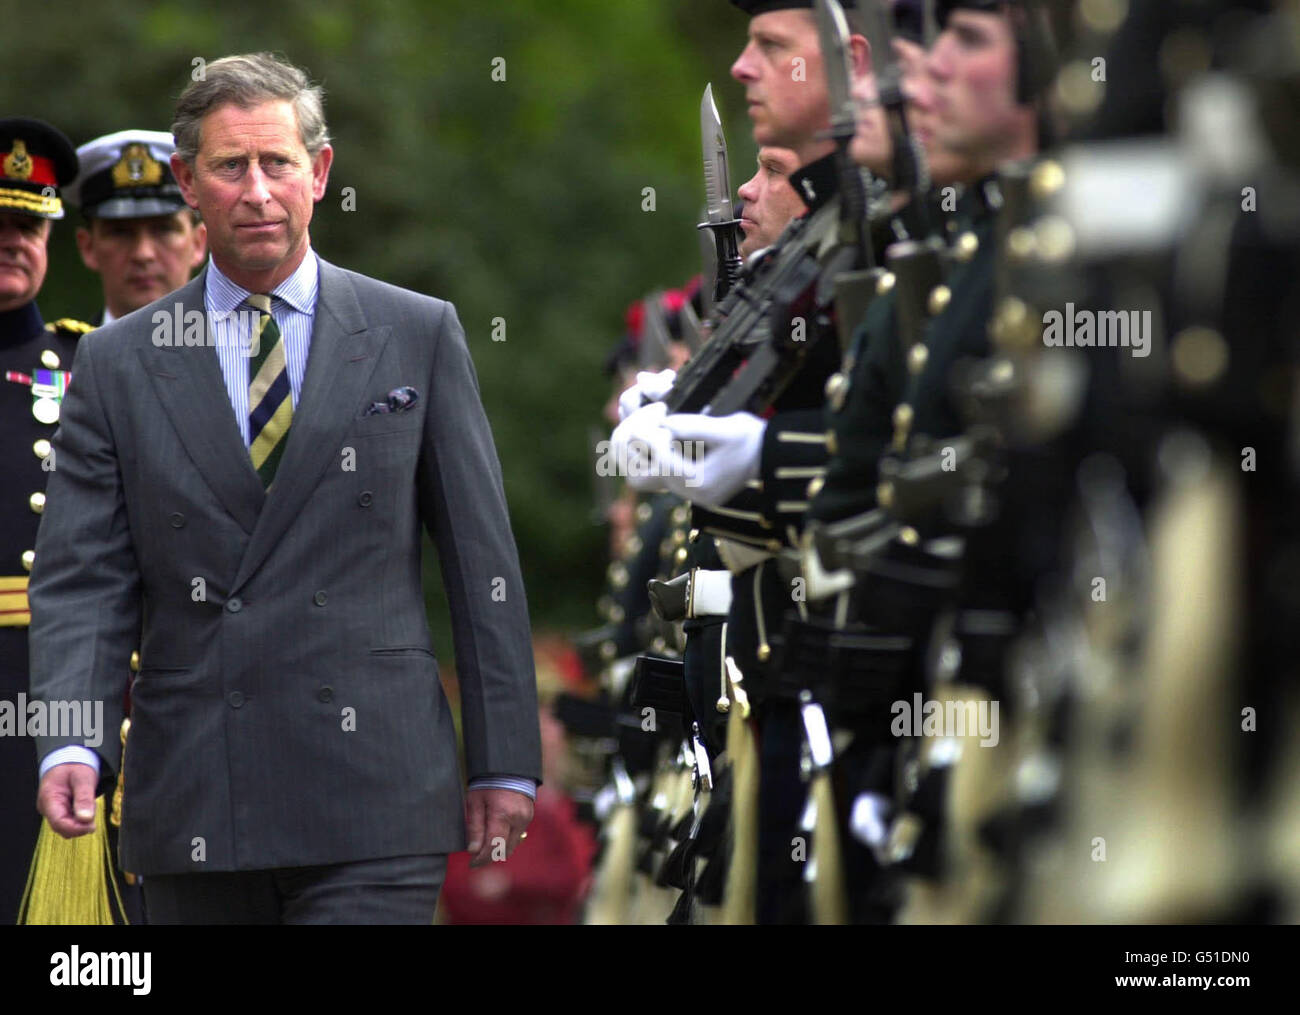 Le Prince Charles au Palais de Holyrood House à Édimbourg inspecte une garde d'honneur montée par la Black Watch du 1er Bataillon. Banque D'Images